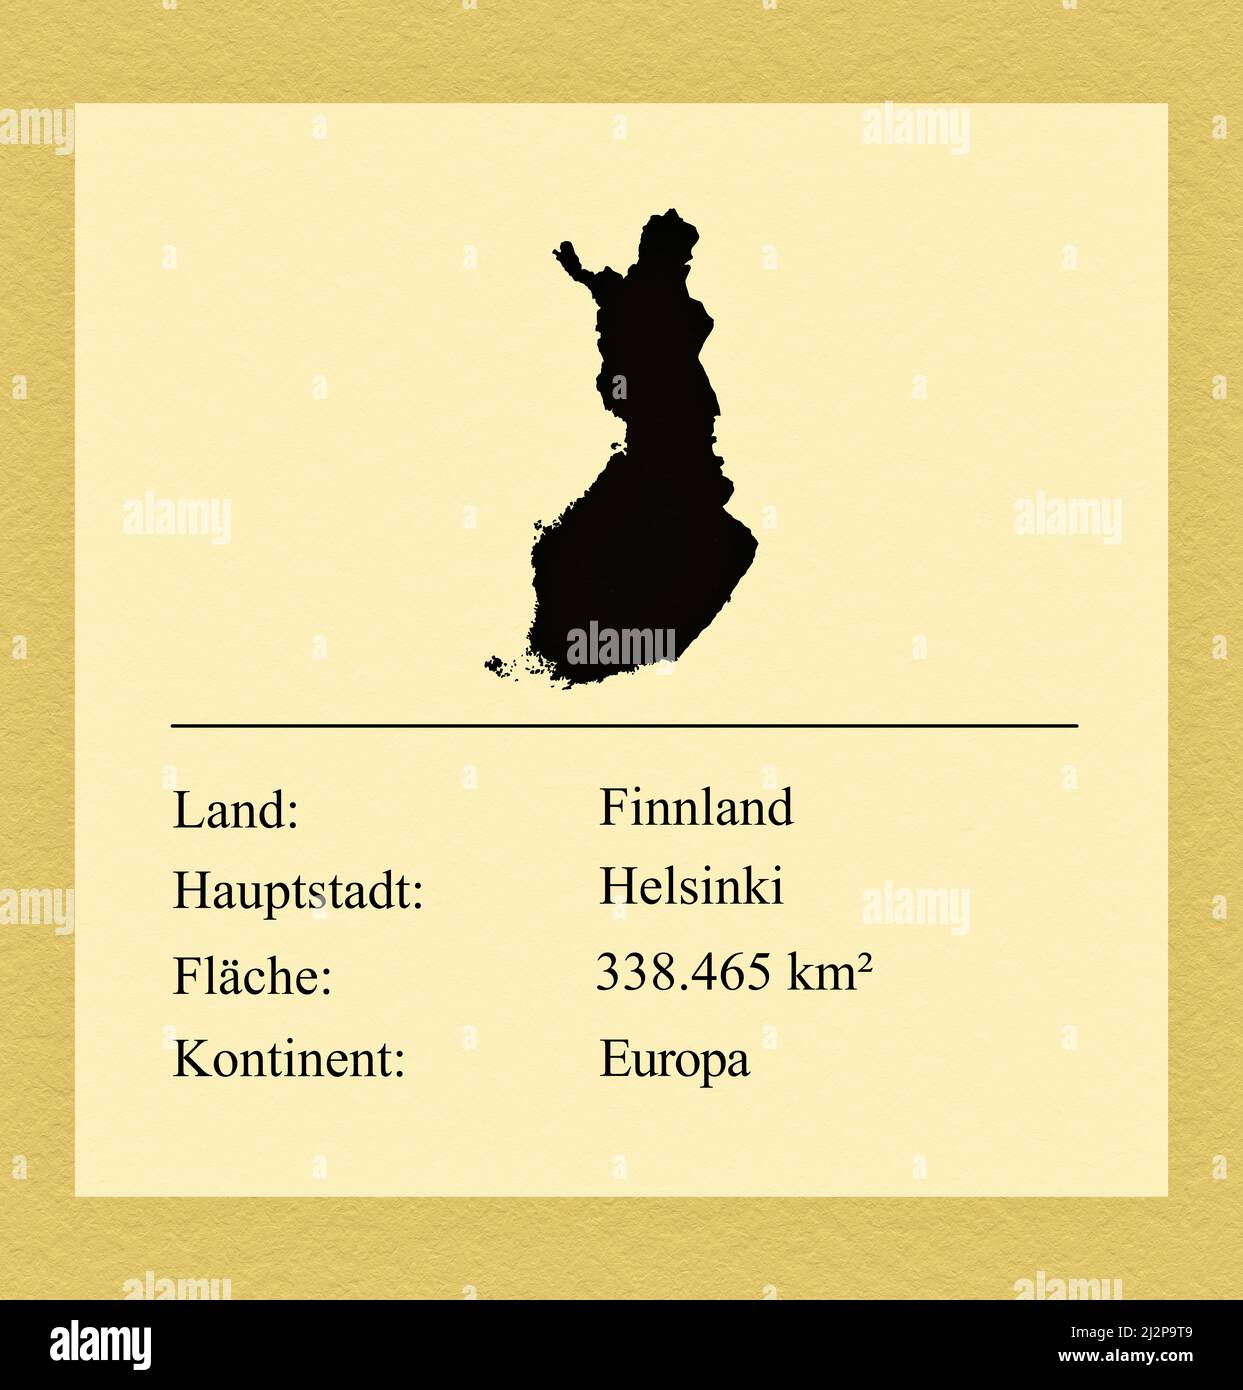 Umrisse des Landes Finnland, darunter ein kleiner Steckbrief mit Ländernamen, Hauptstadt, Fläche und Kontinent Foto de stock